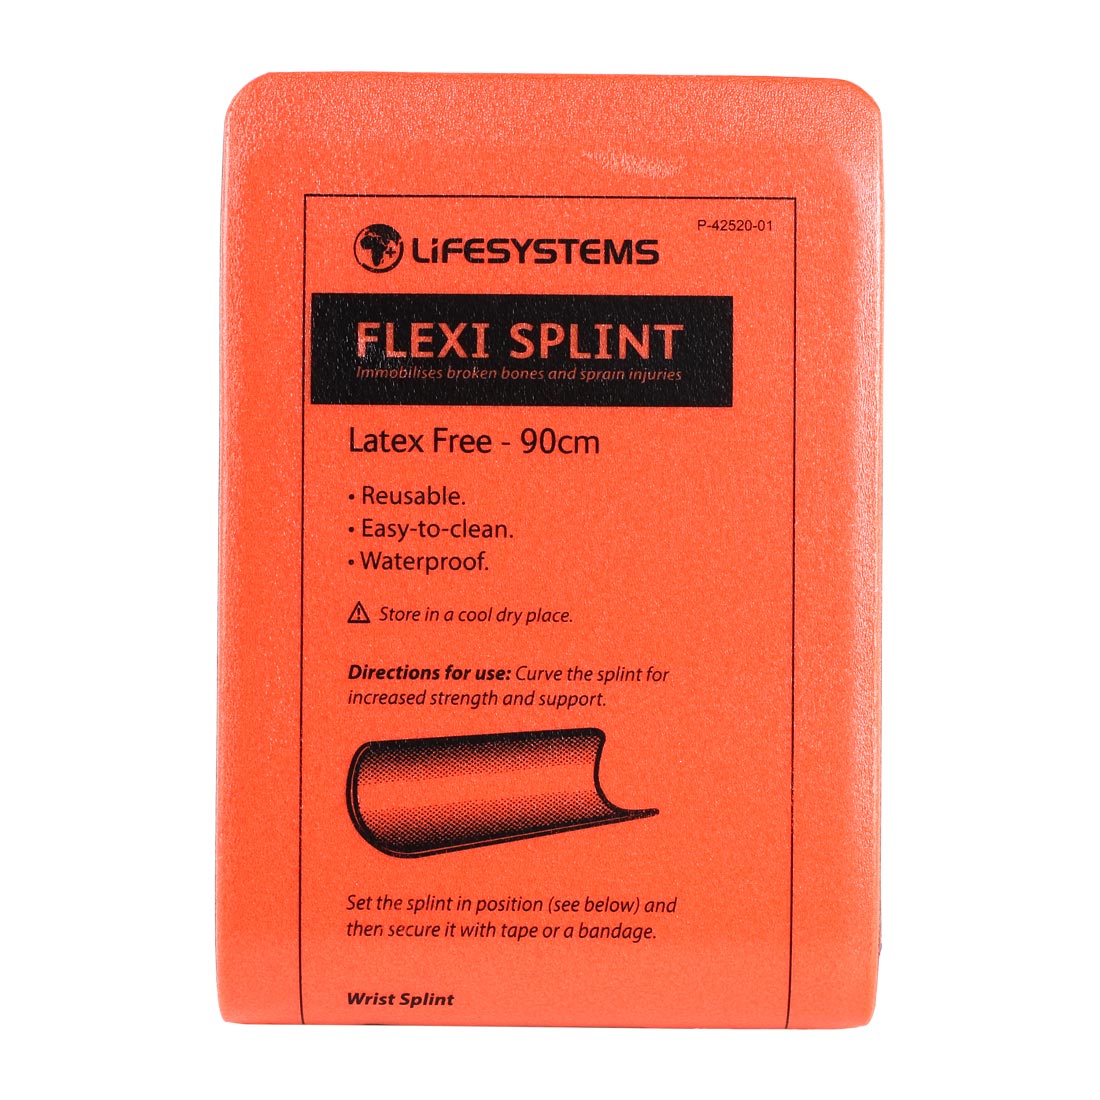 Flexi Splint - variant[Large]